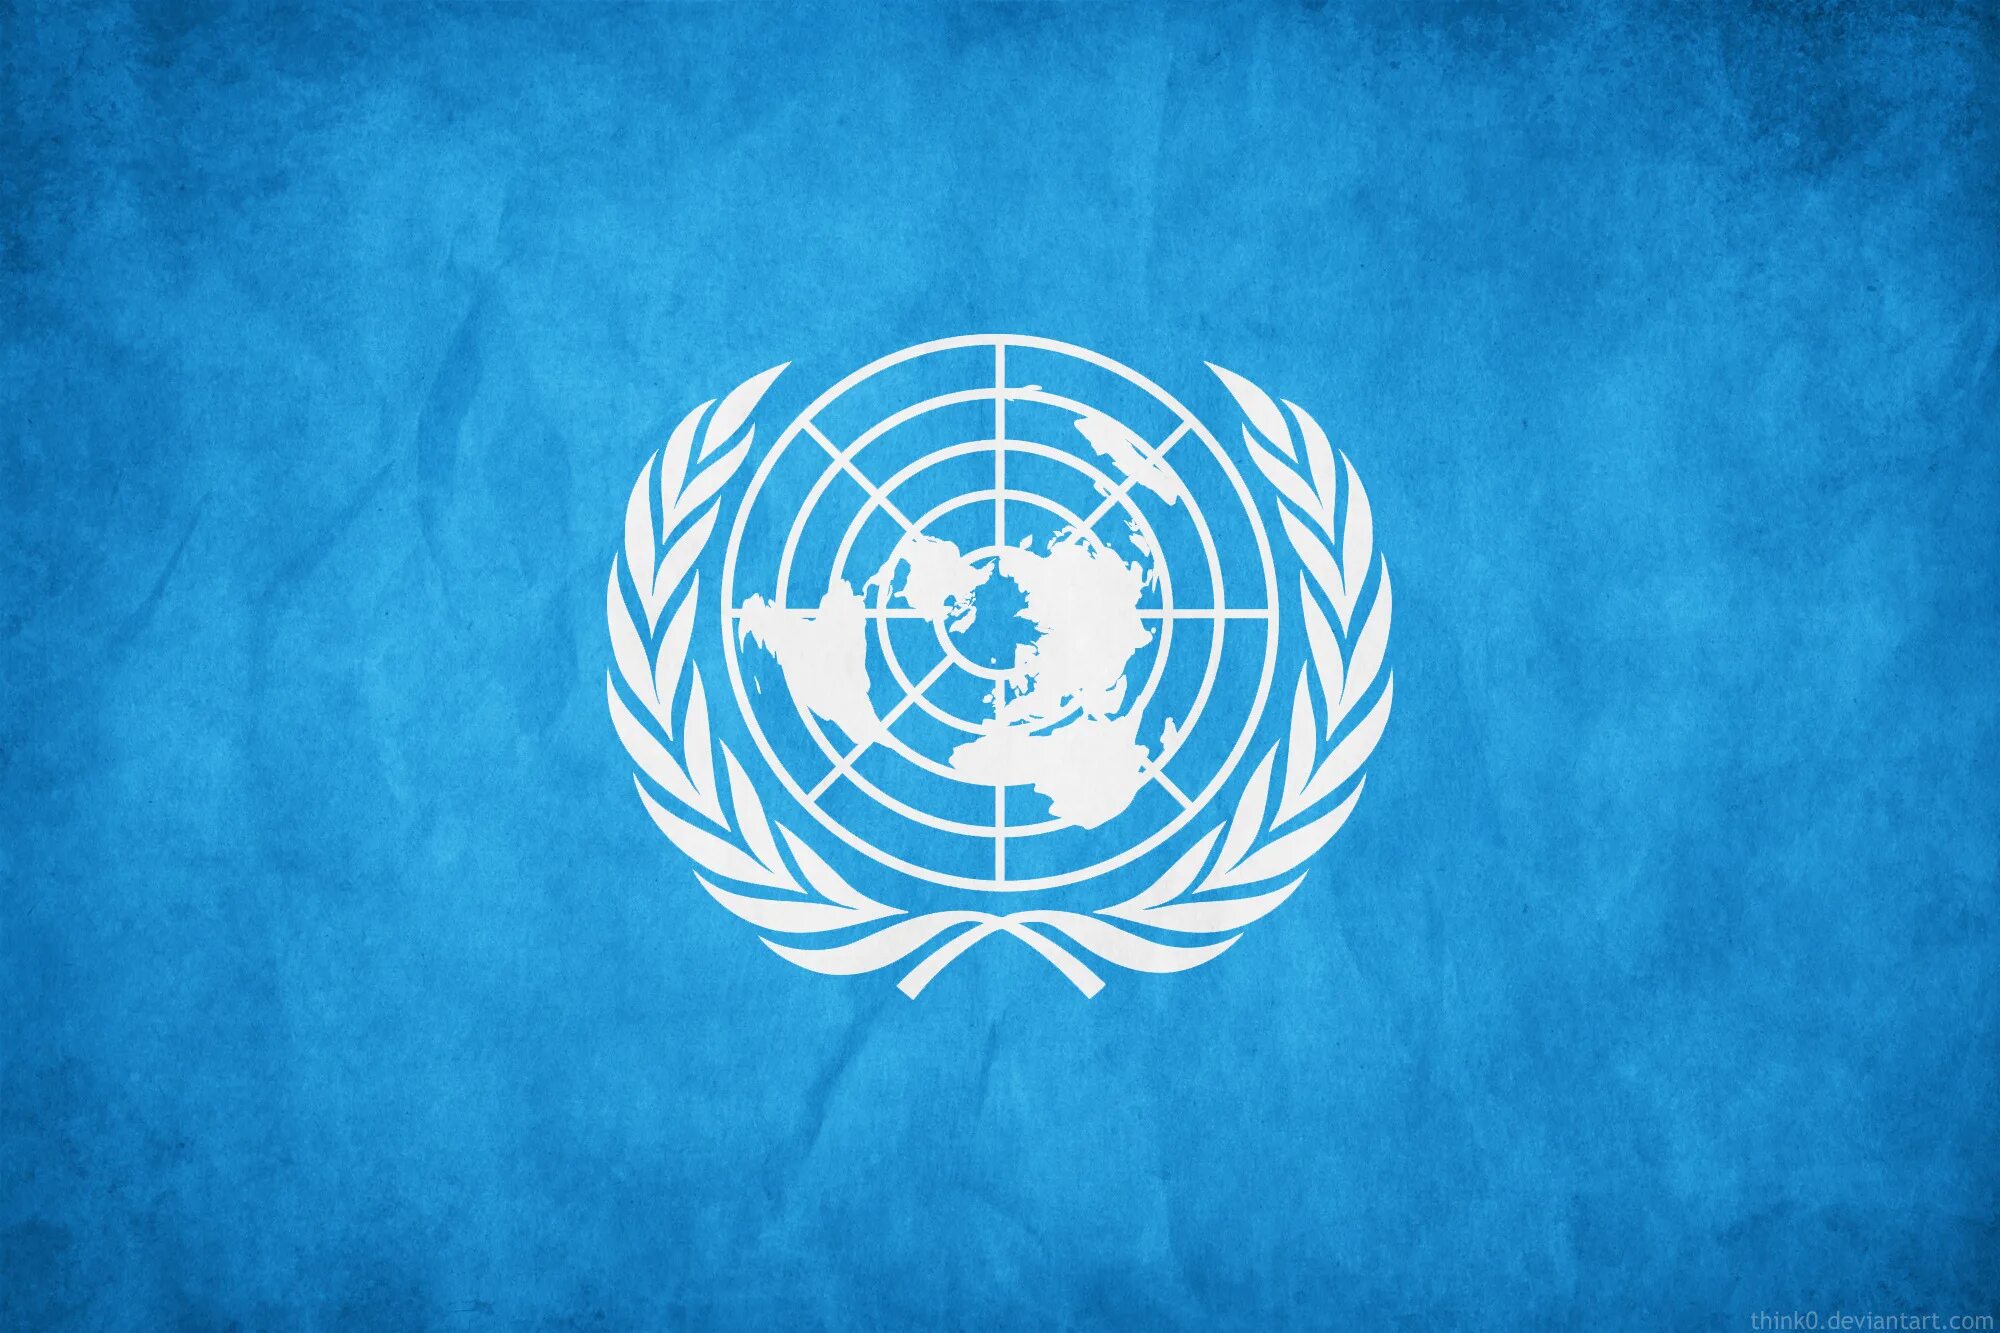 Производства оон. Флаг миротворческих сил ООН. Организация Объединенных наций (ООН). Флаг организации Объединенных наций. Организация Объединенных наций ООН флаг.